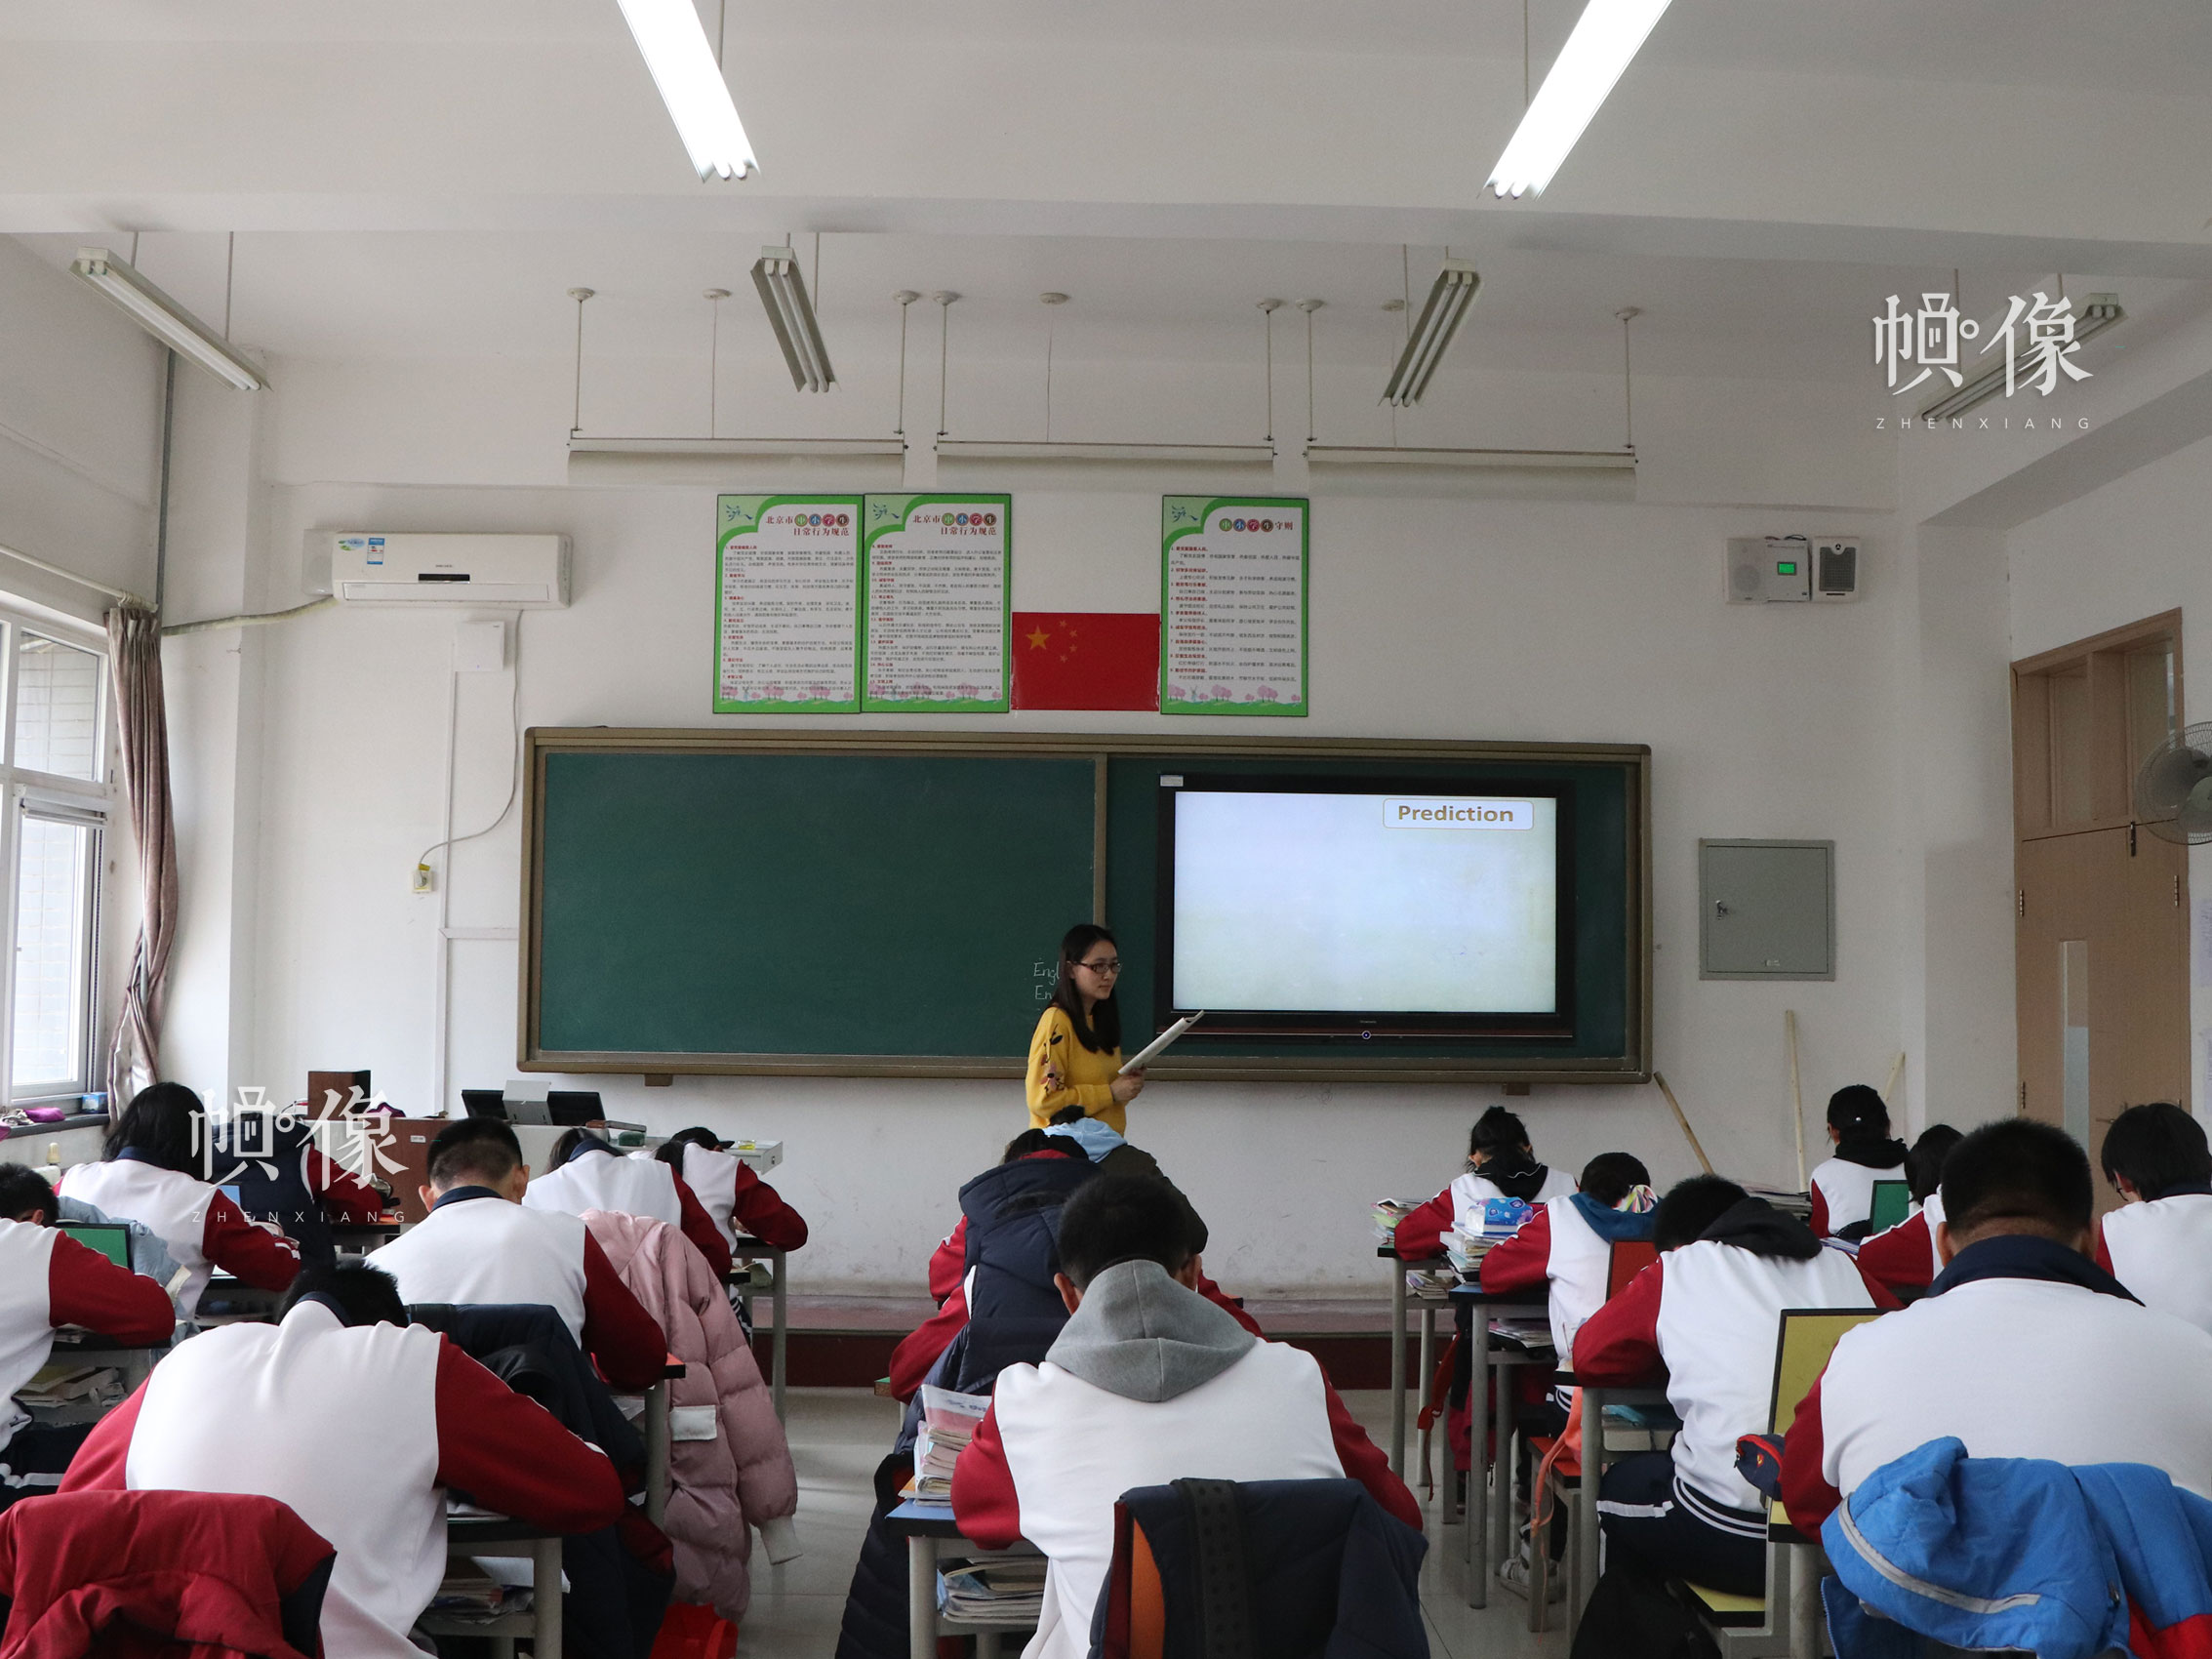 北京市石景山區某中學，課堂上老師給學生做聽寫。中國網實習記者 韓依 攝